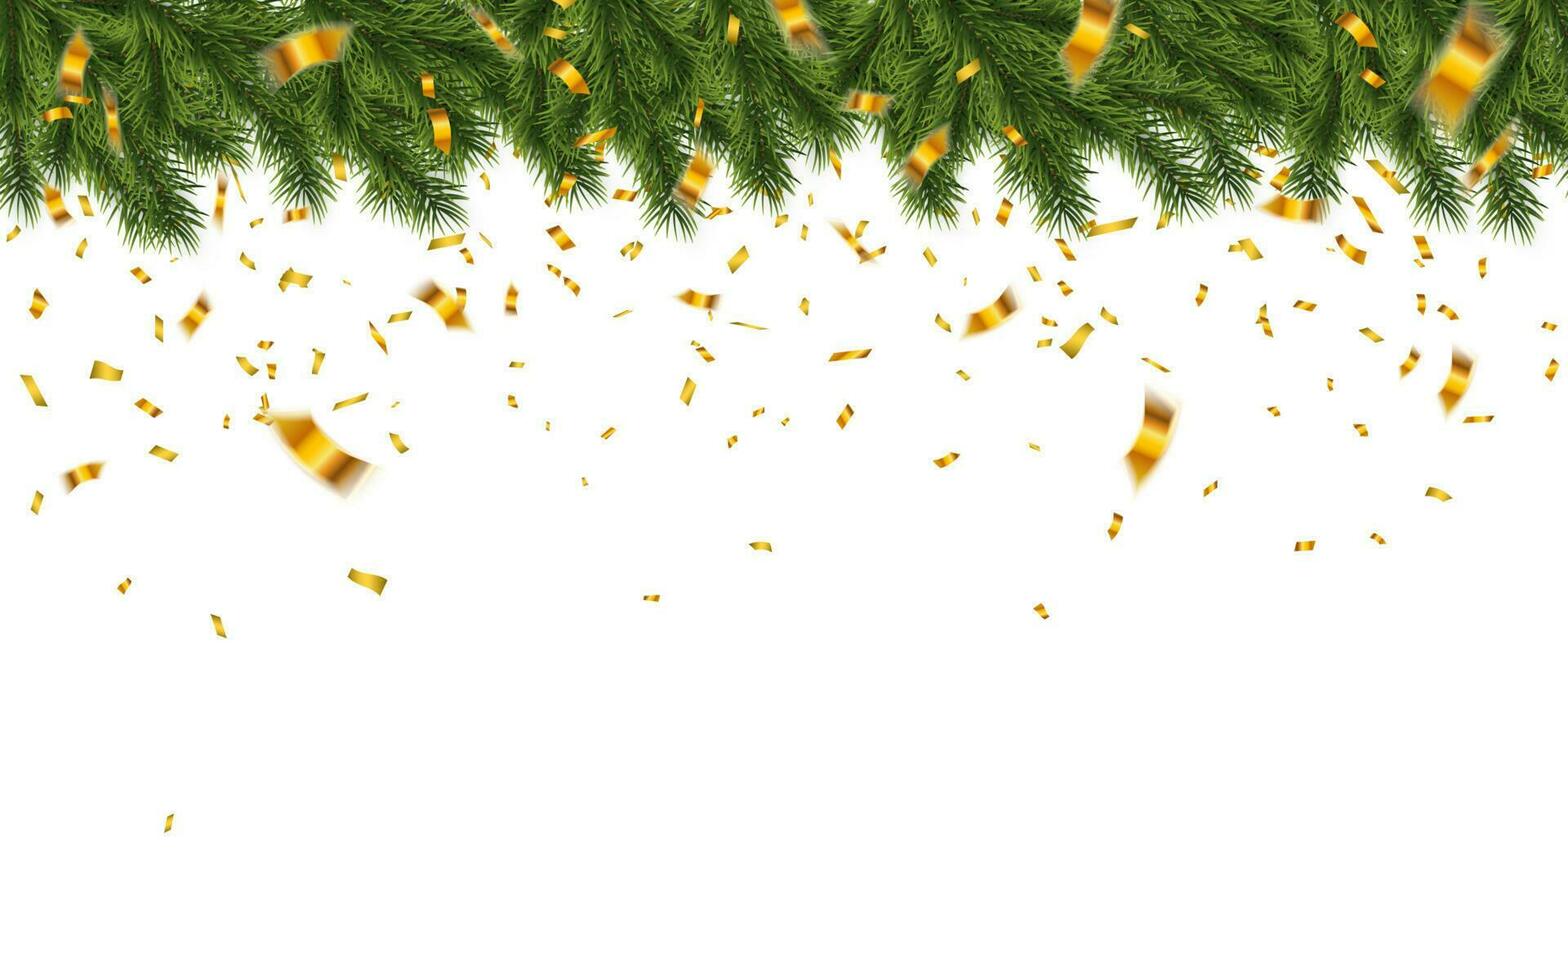 festivo Navidad o nuevo año antecedentes. Navidad abeto ramas con papel picado. vacaciones antecedentes. vector ilustración